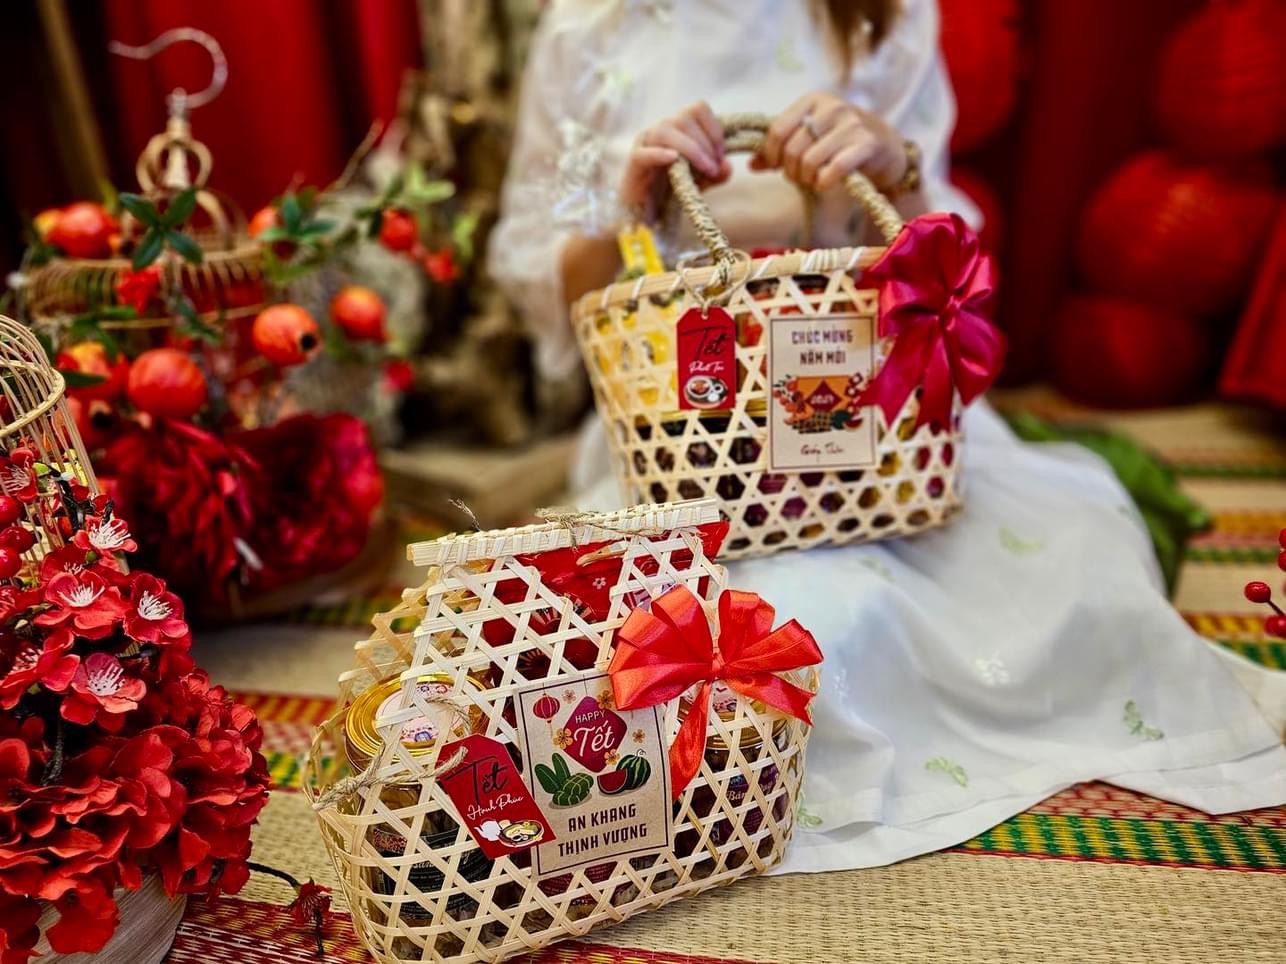 Giỏ quà bằng tre truyền thống, hình túi xách